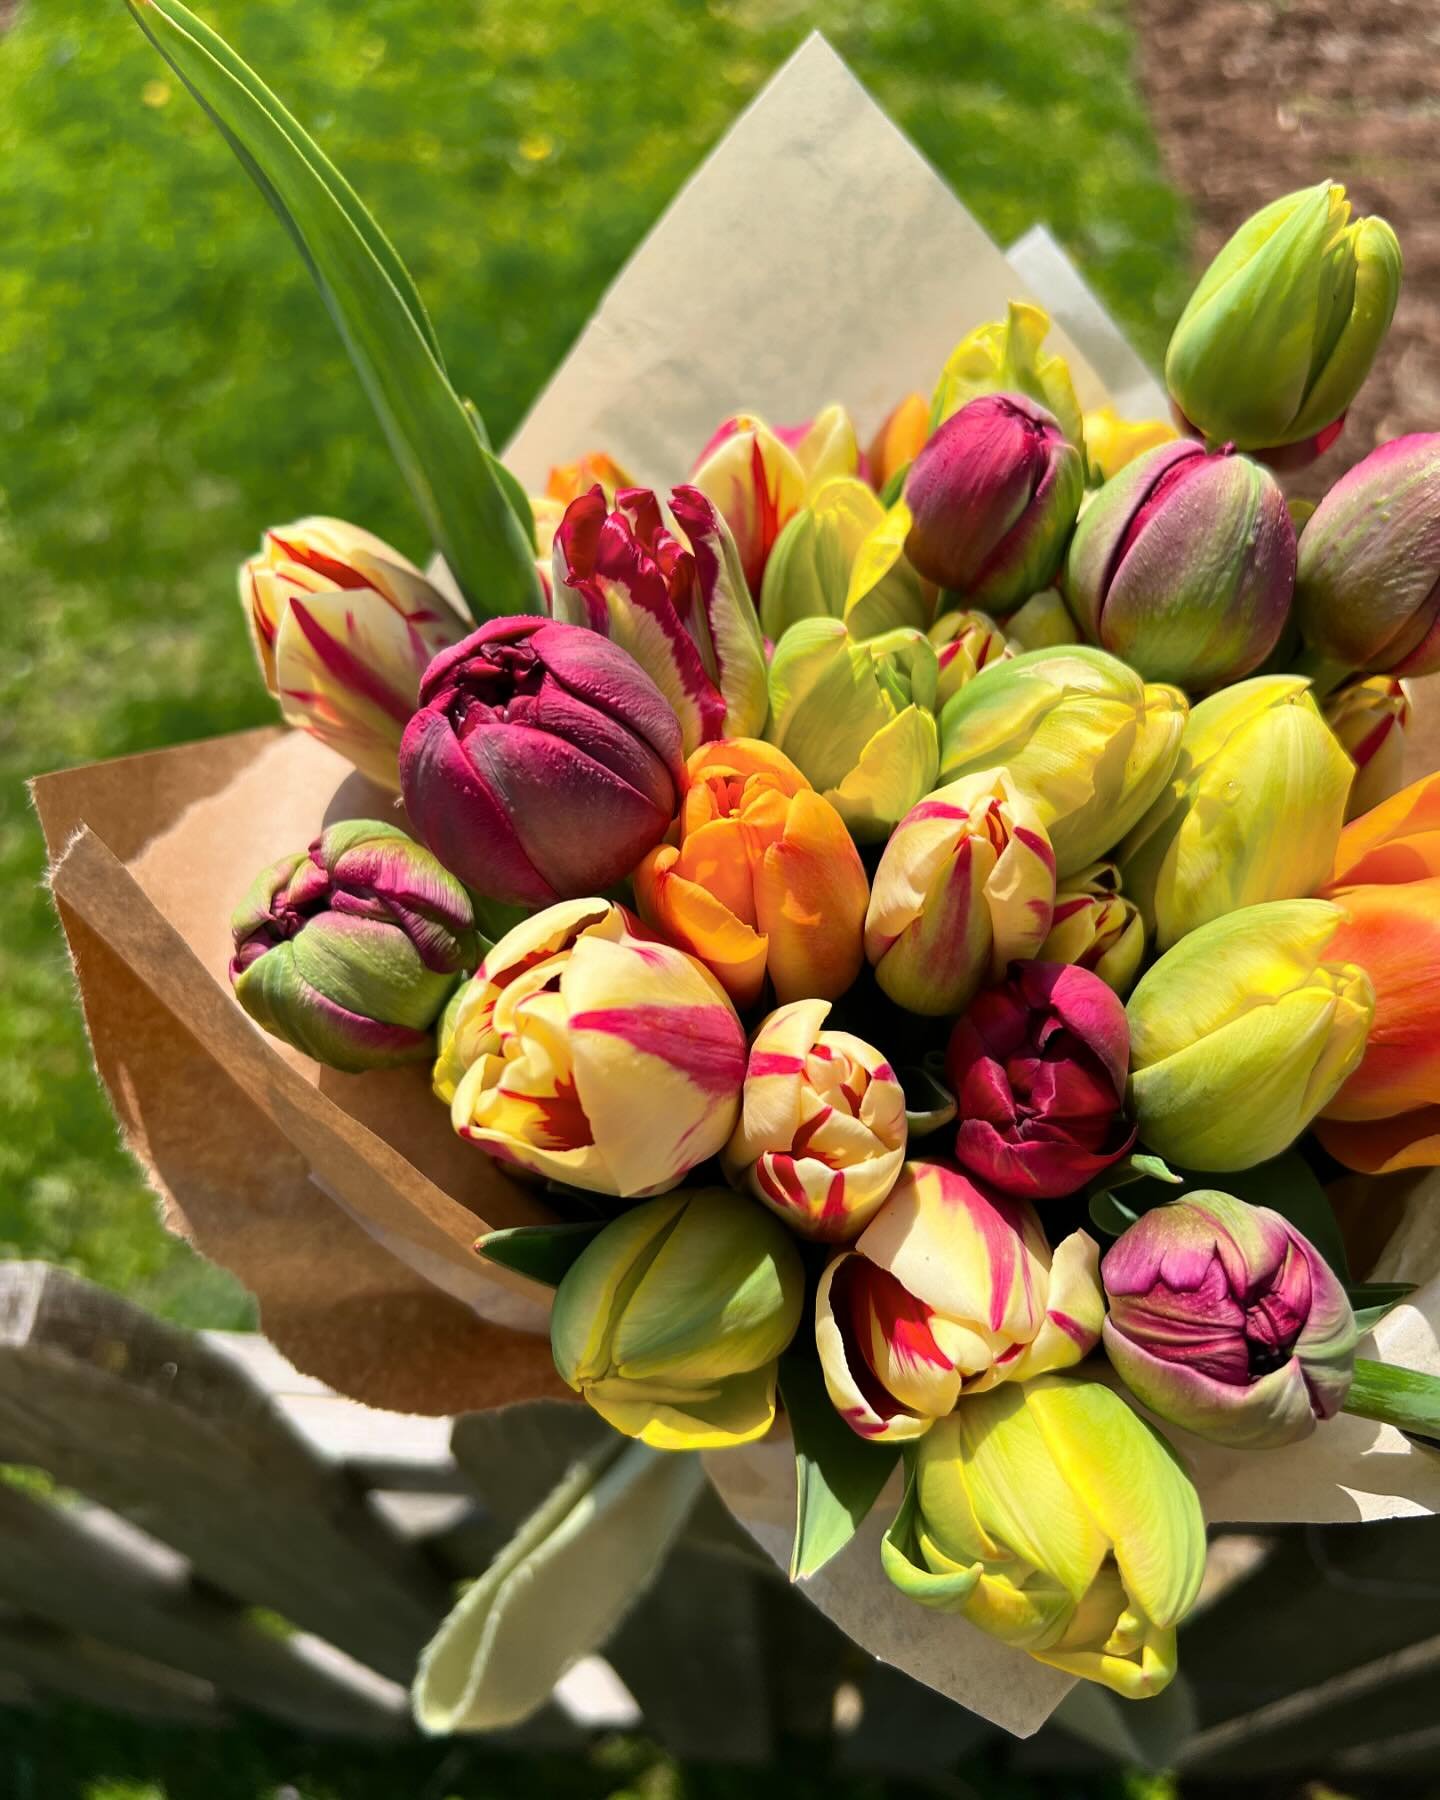 Fruit punch bunch! #longfieldfarm #flowersfromthefarm #slowflowers #grownnotflown #flowerstagram #flowersofinstagram #tulips #newcanaan #newcanaanmoms